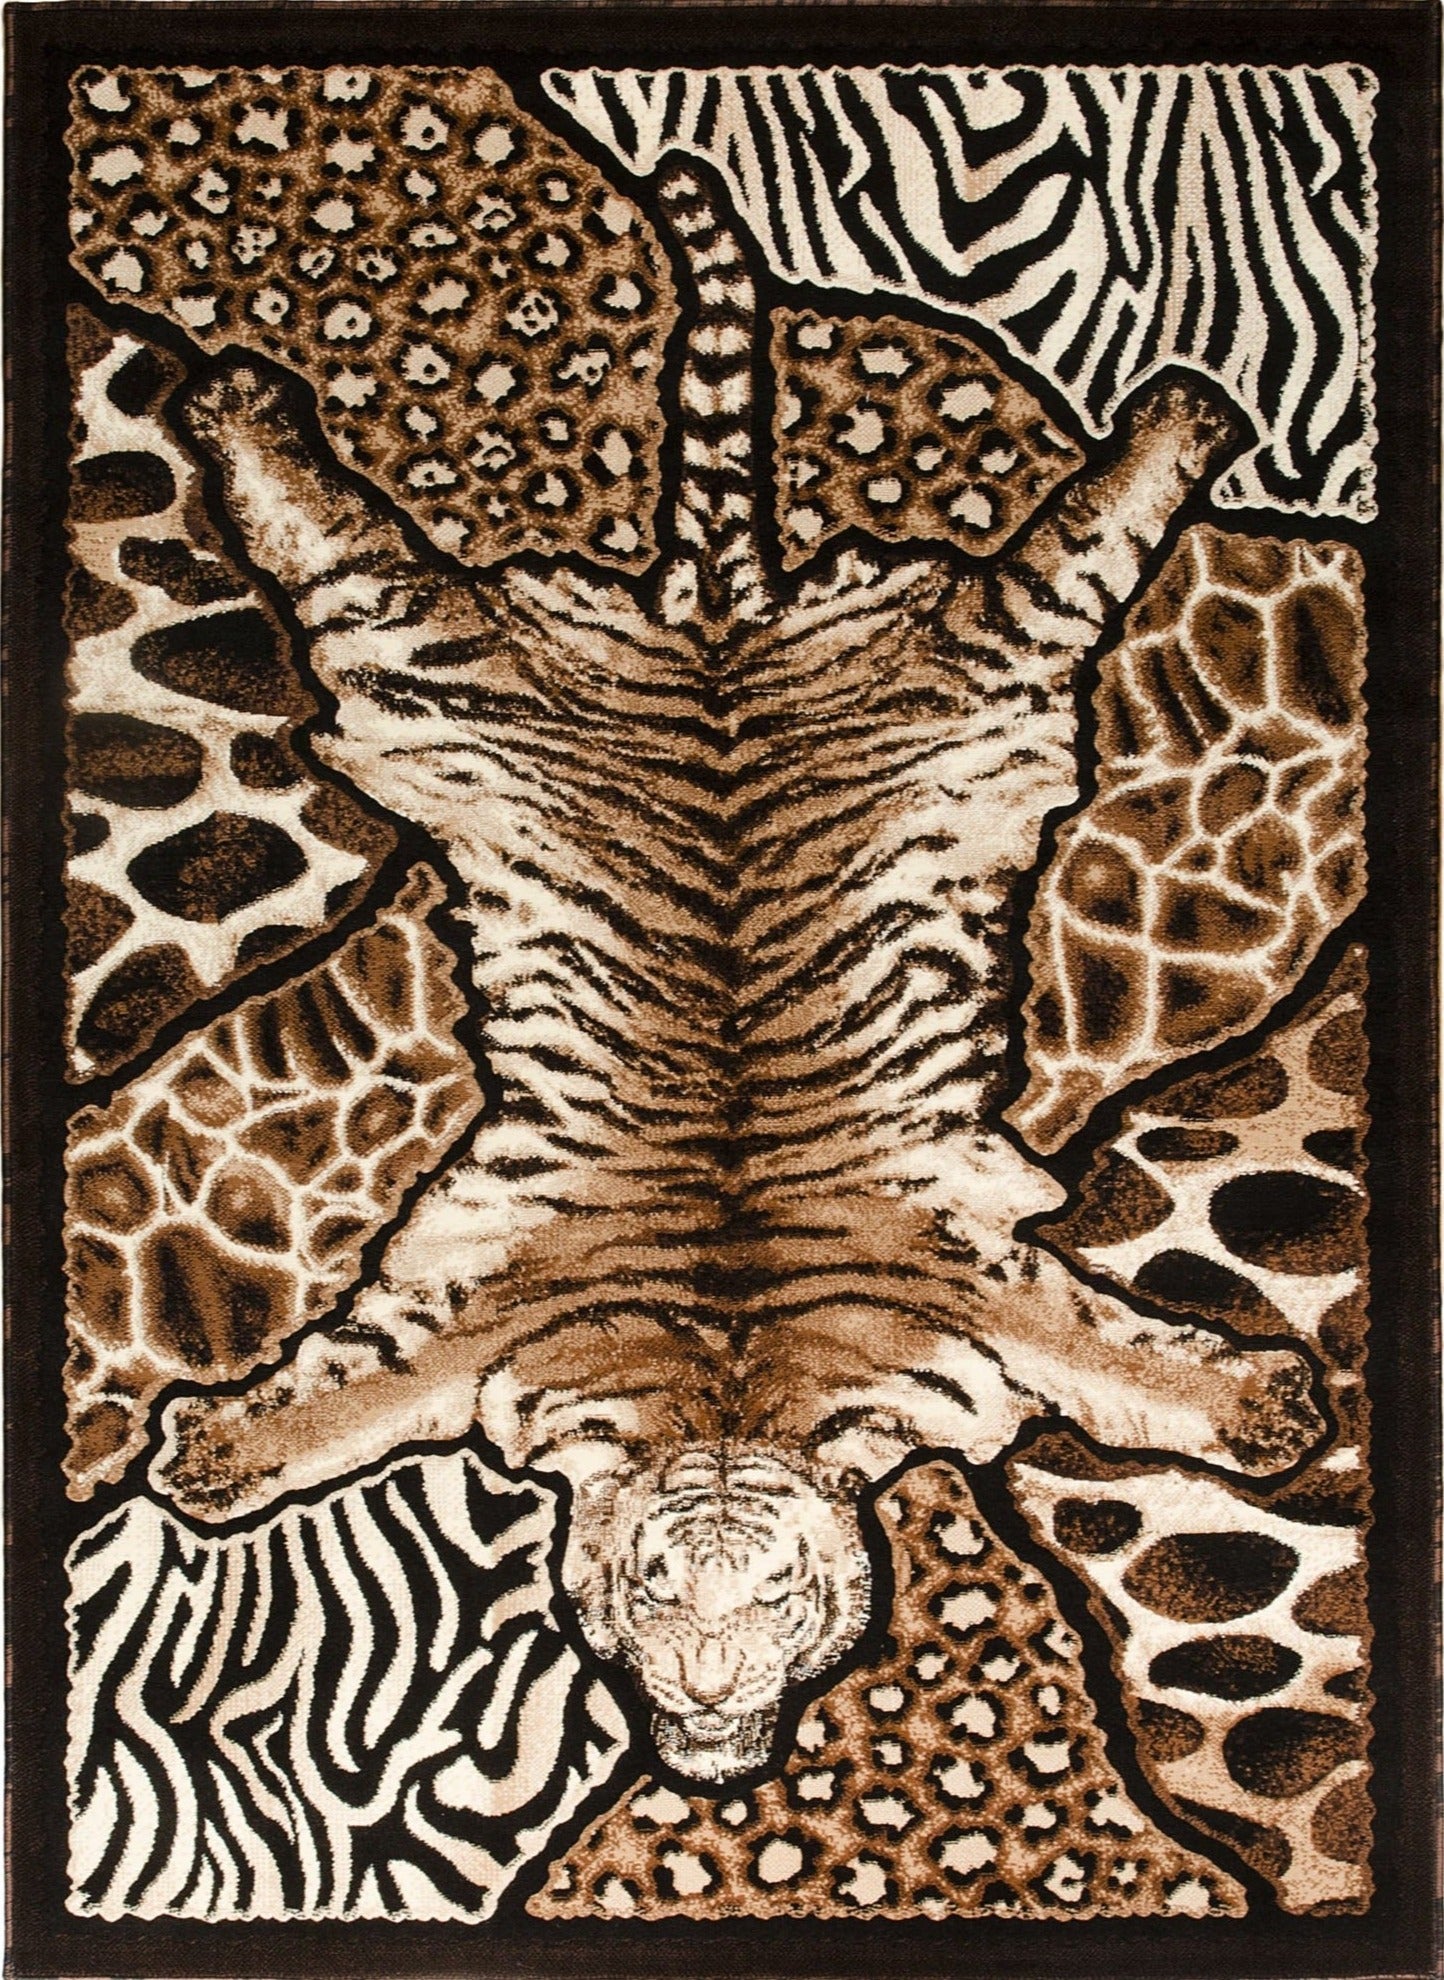 American cover design / Persian weavers Skinz-72 Animal Print Rug